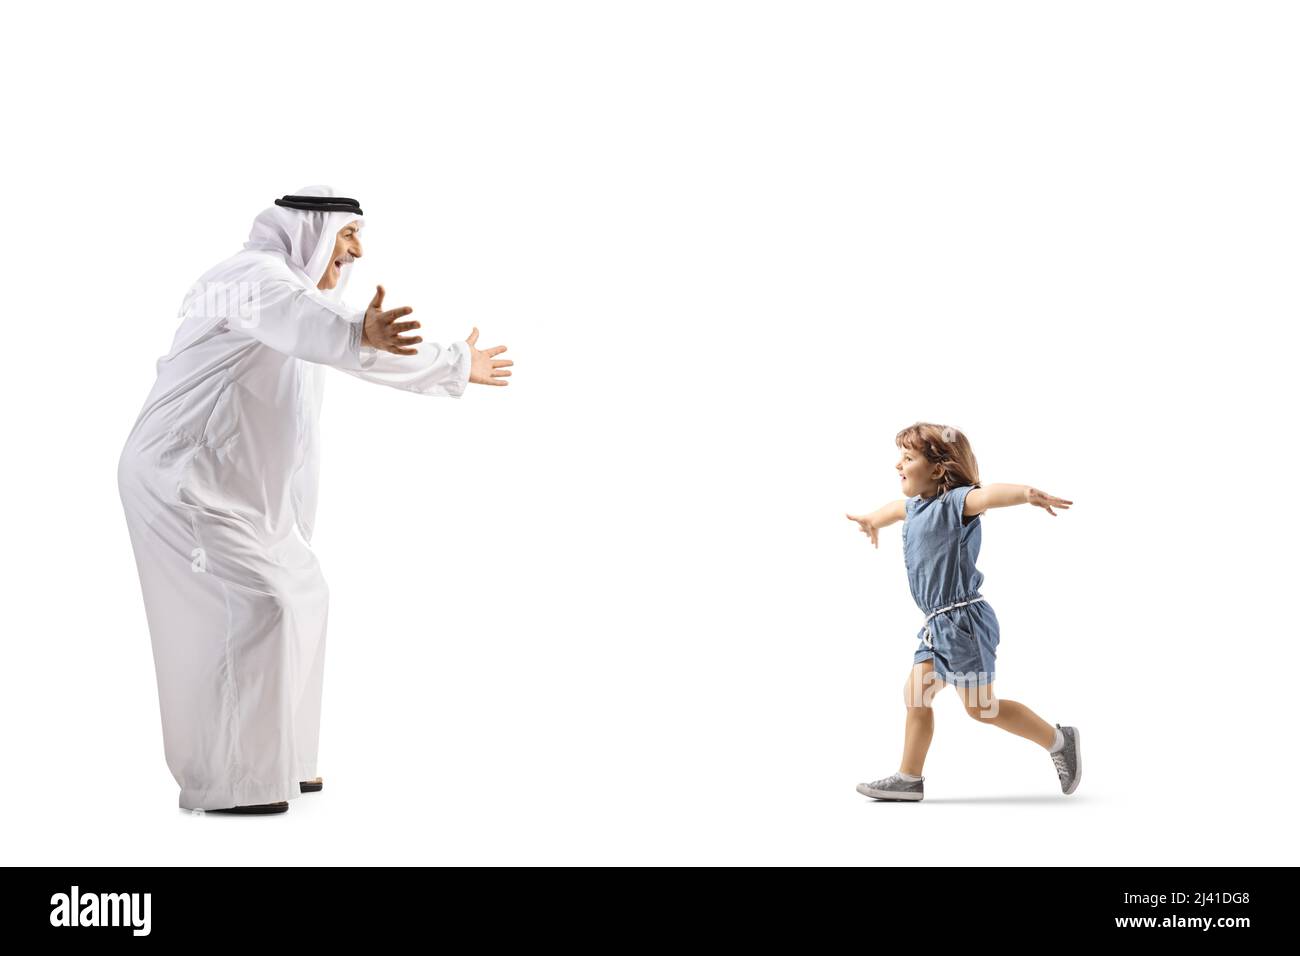 Sparato a tutto profilo di una bambina che corre verso un uomo arabo in abiti etnici isolati su sfondo bianco Foto Stock